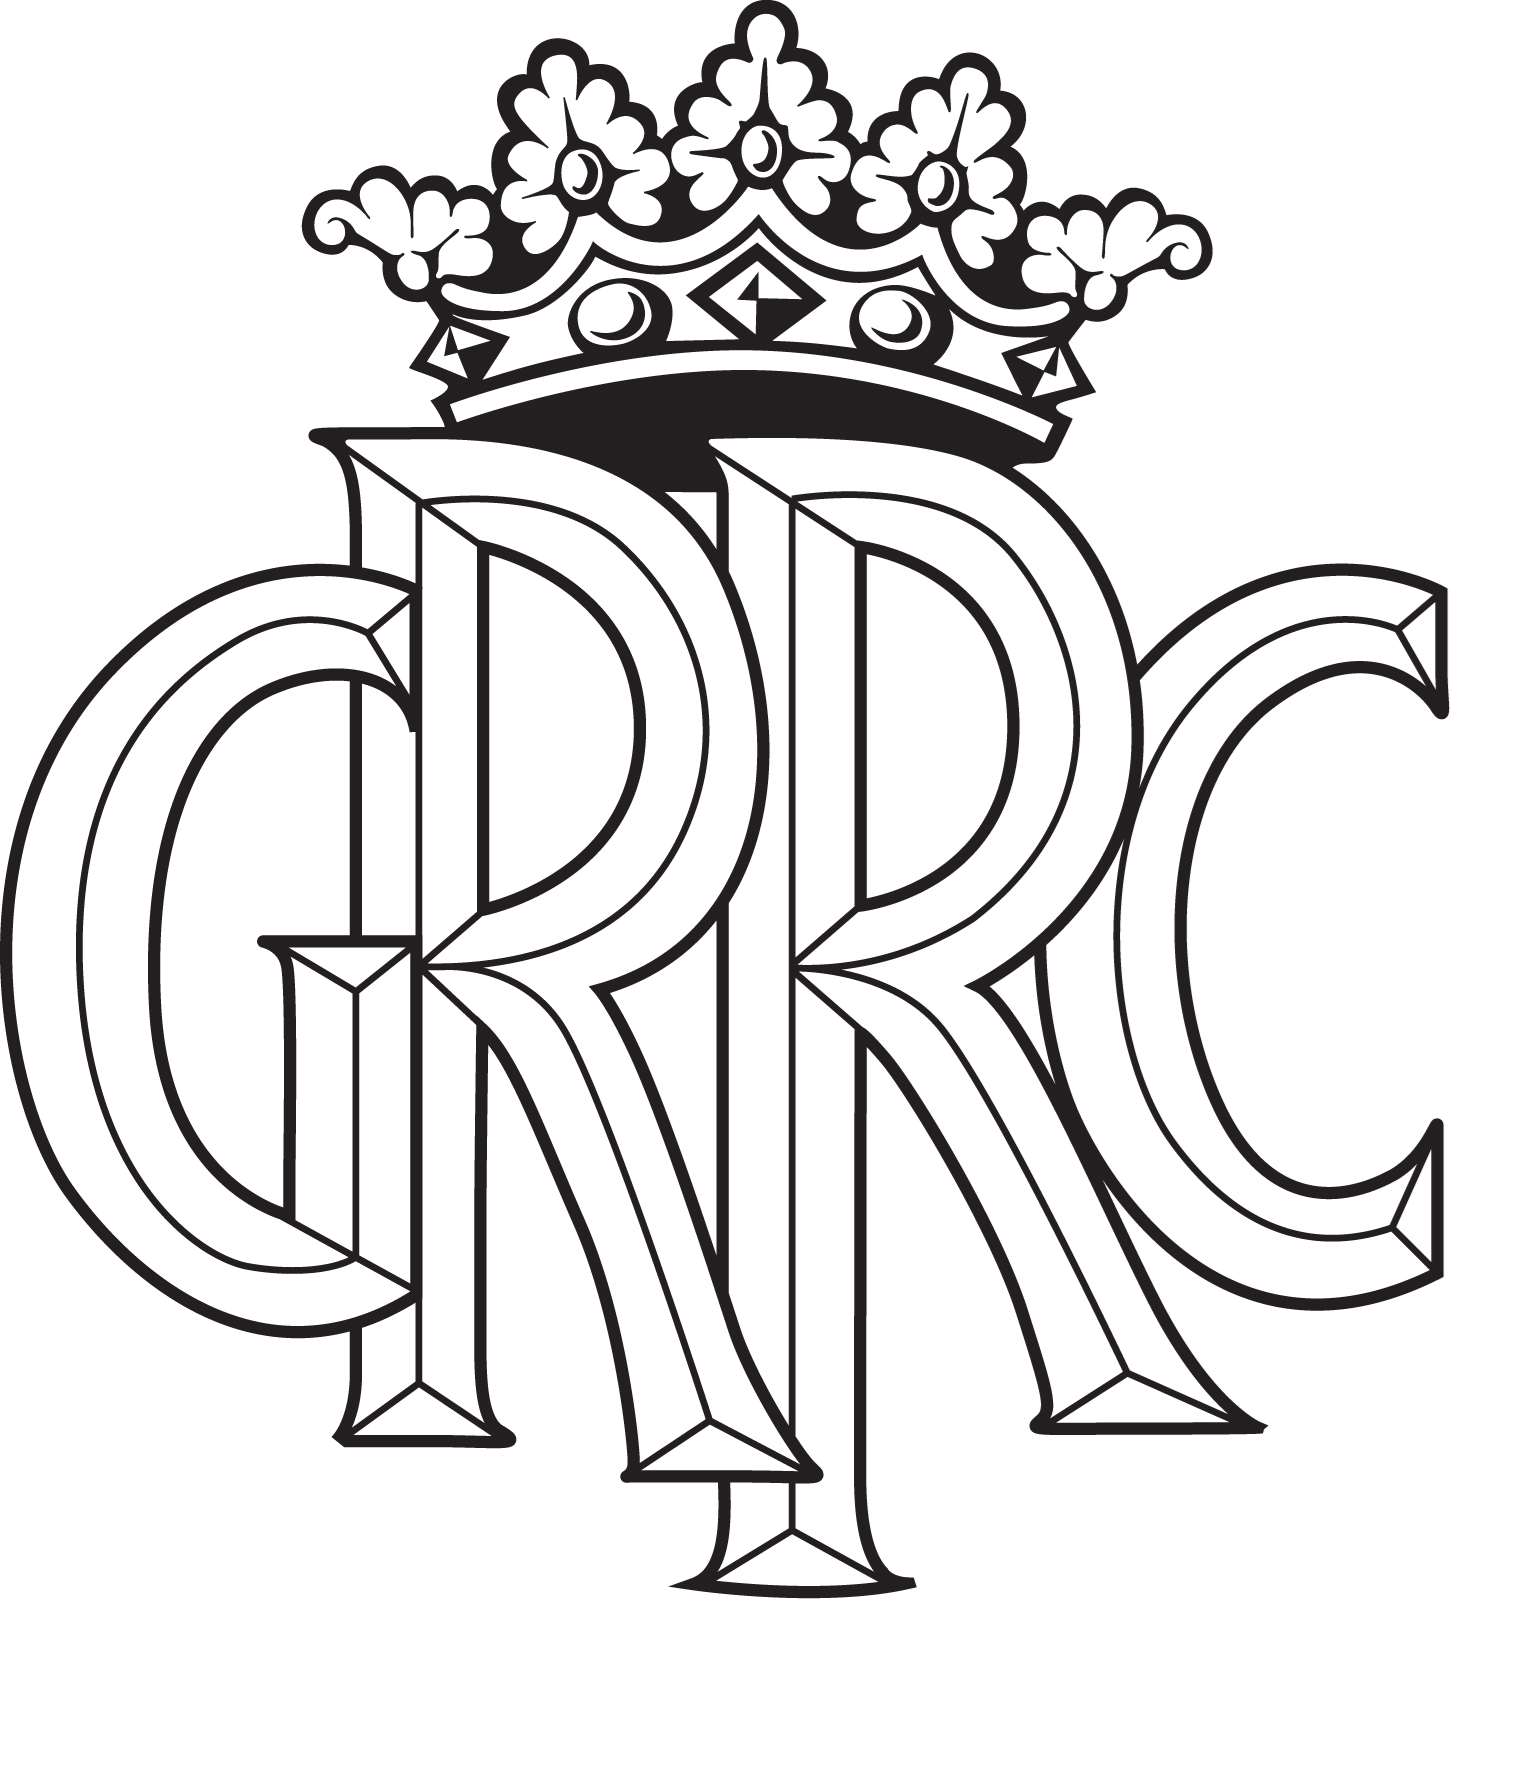 GRRC Logo.jpg